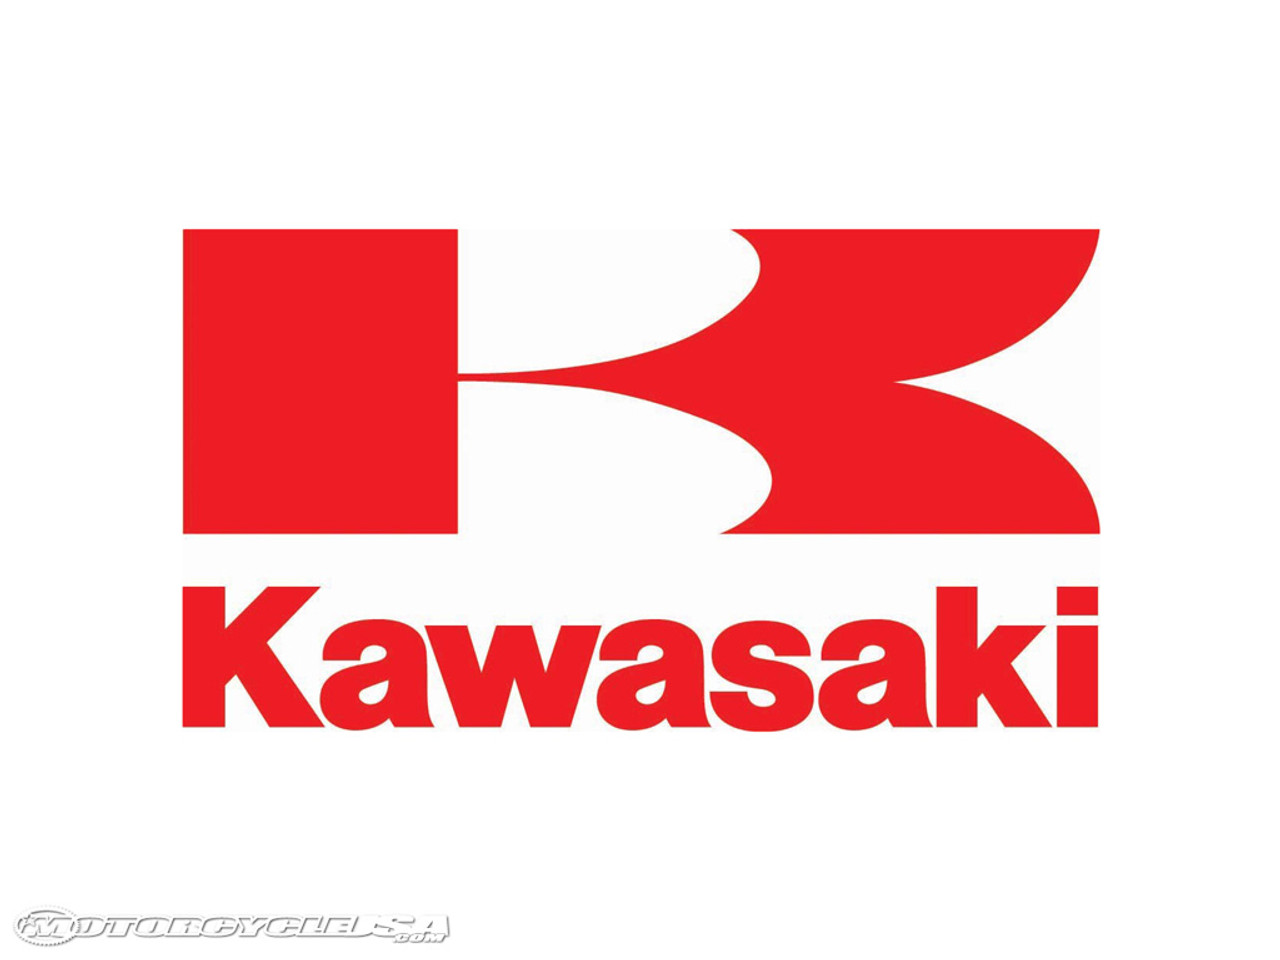 Kawasaki 49103-2124 Arm-Governor